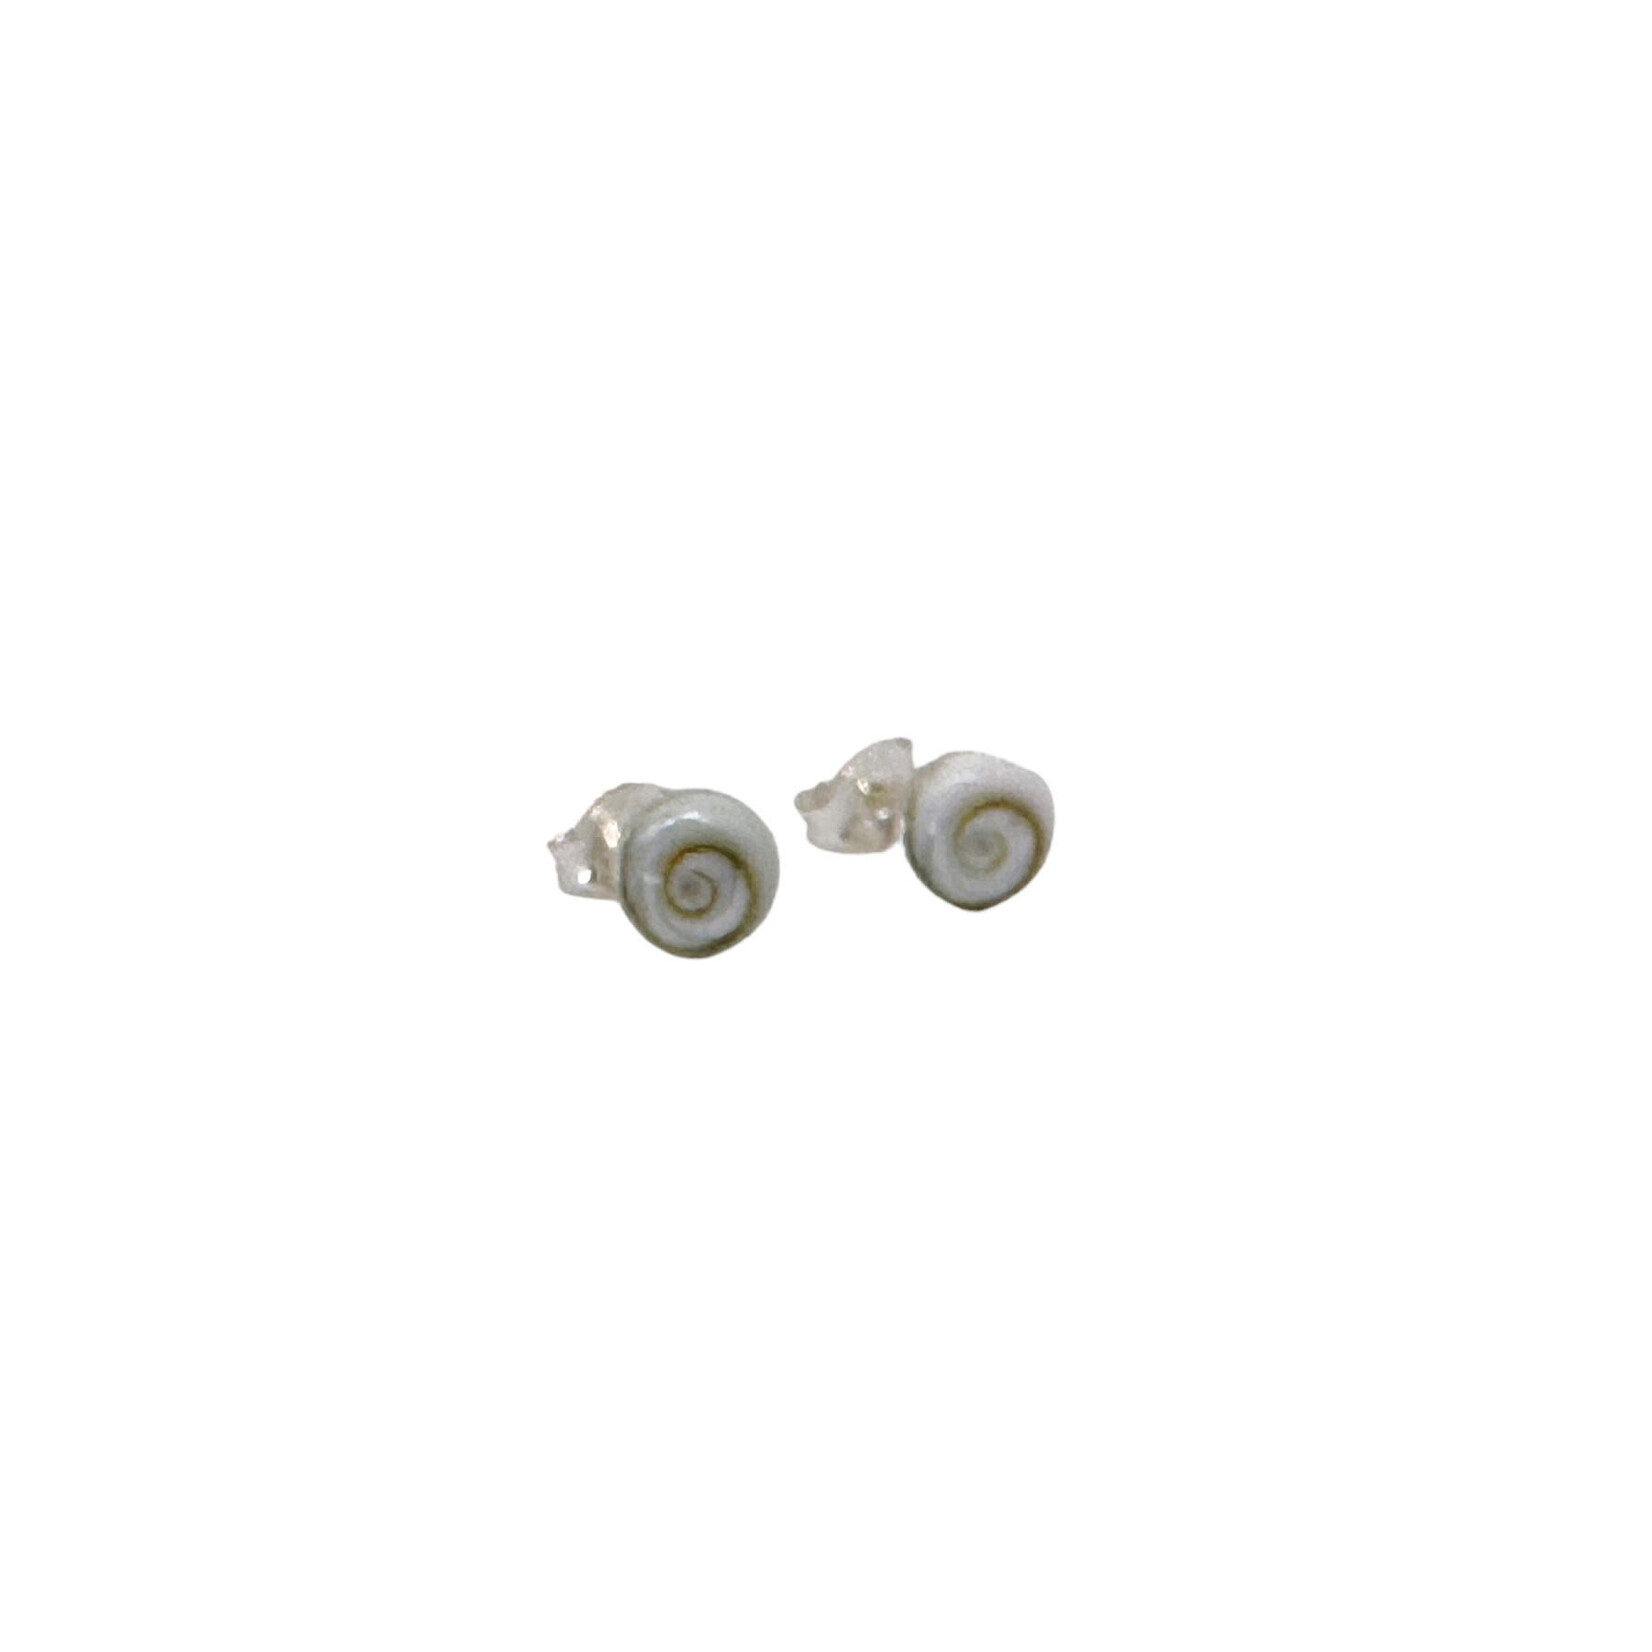 SE510 Sterling Silver Eye of Shiva Stud Earrings 6mm